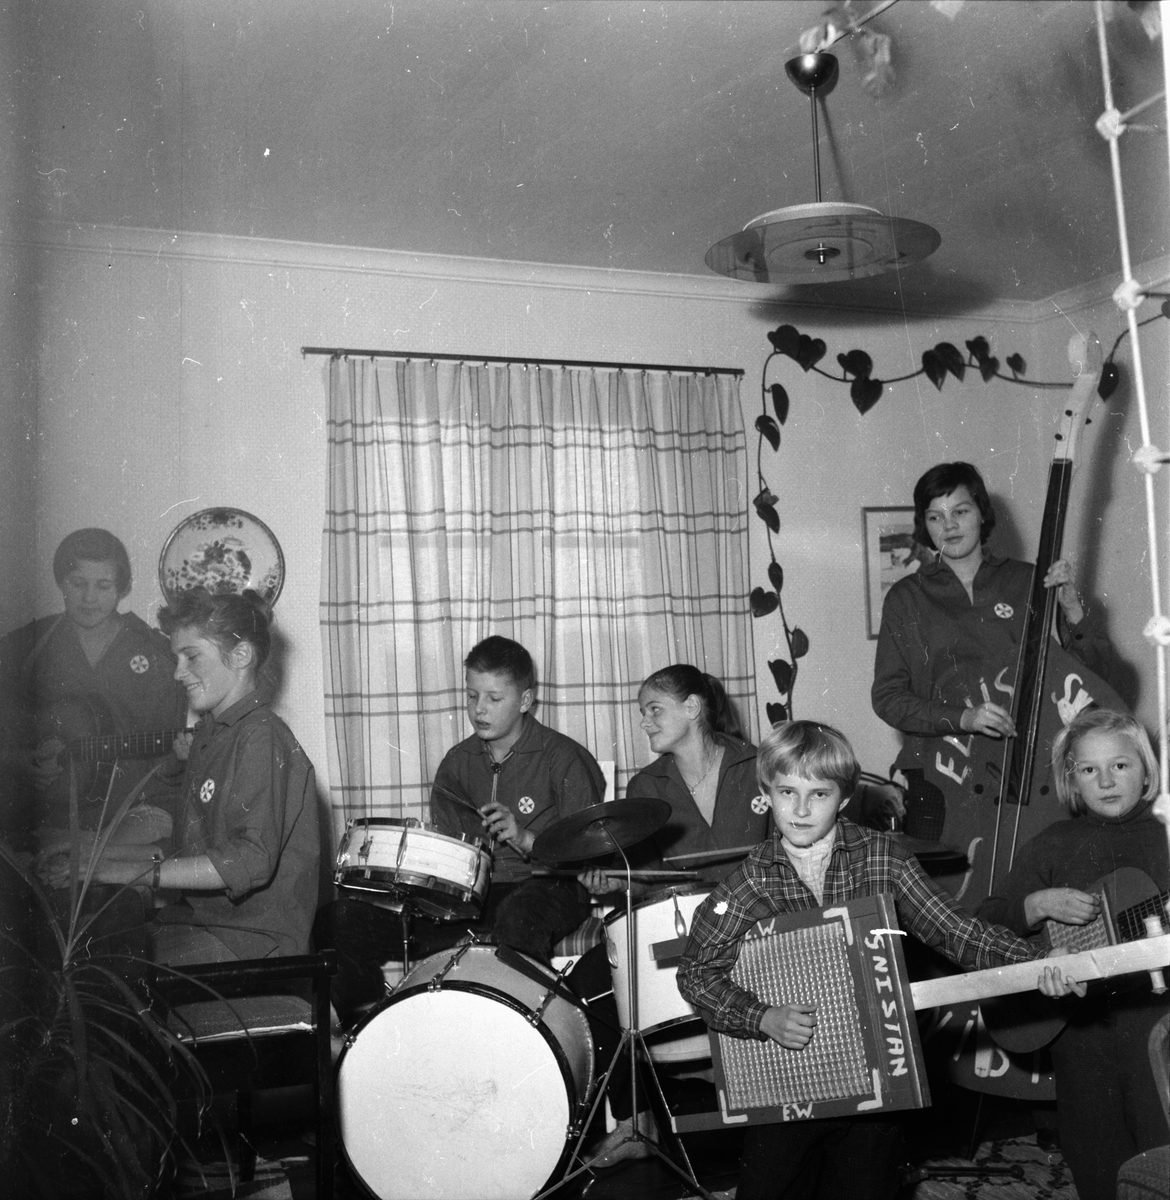 Gnistan.  Fv. Iris Olsson, Kerstin Persson, Lars Arvidsson, Eva Nordén, Anna Persson, Ingrid Forsell, Inger Thörnell.
Bogården 1959